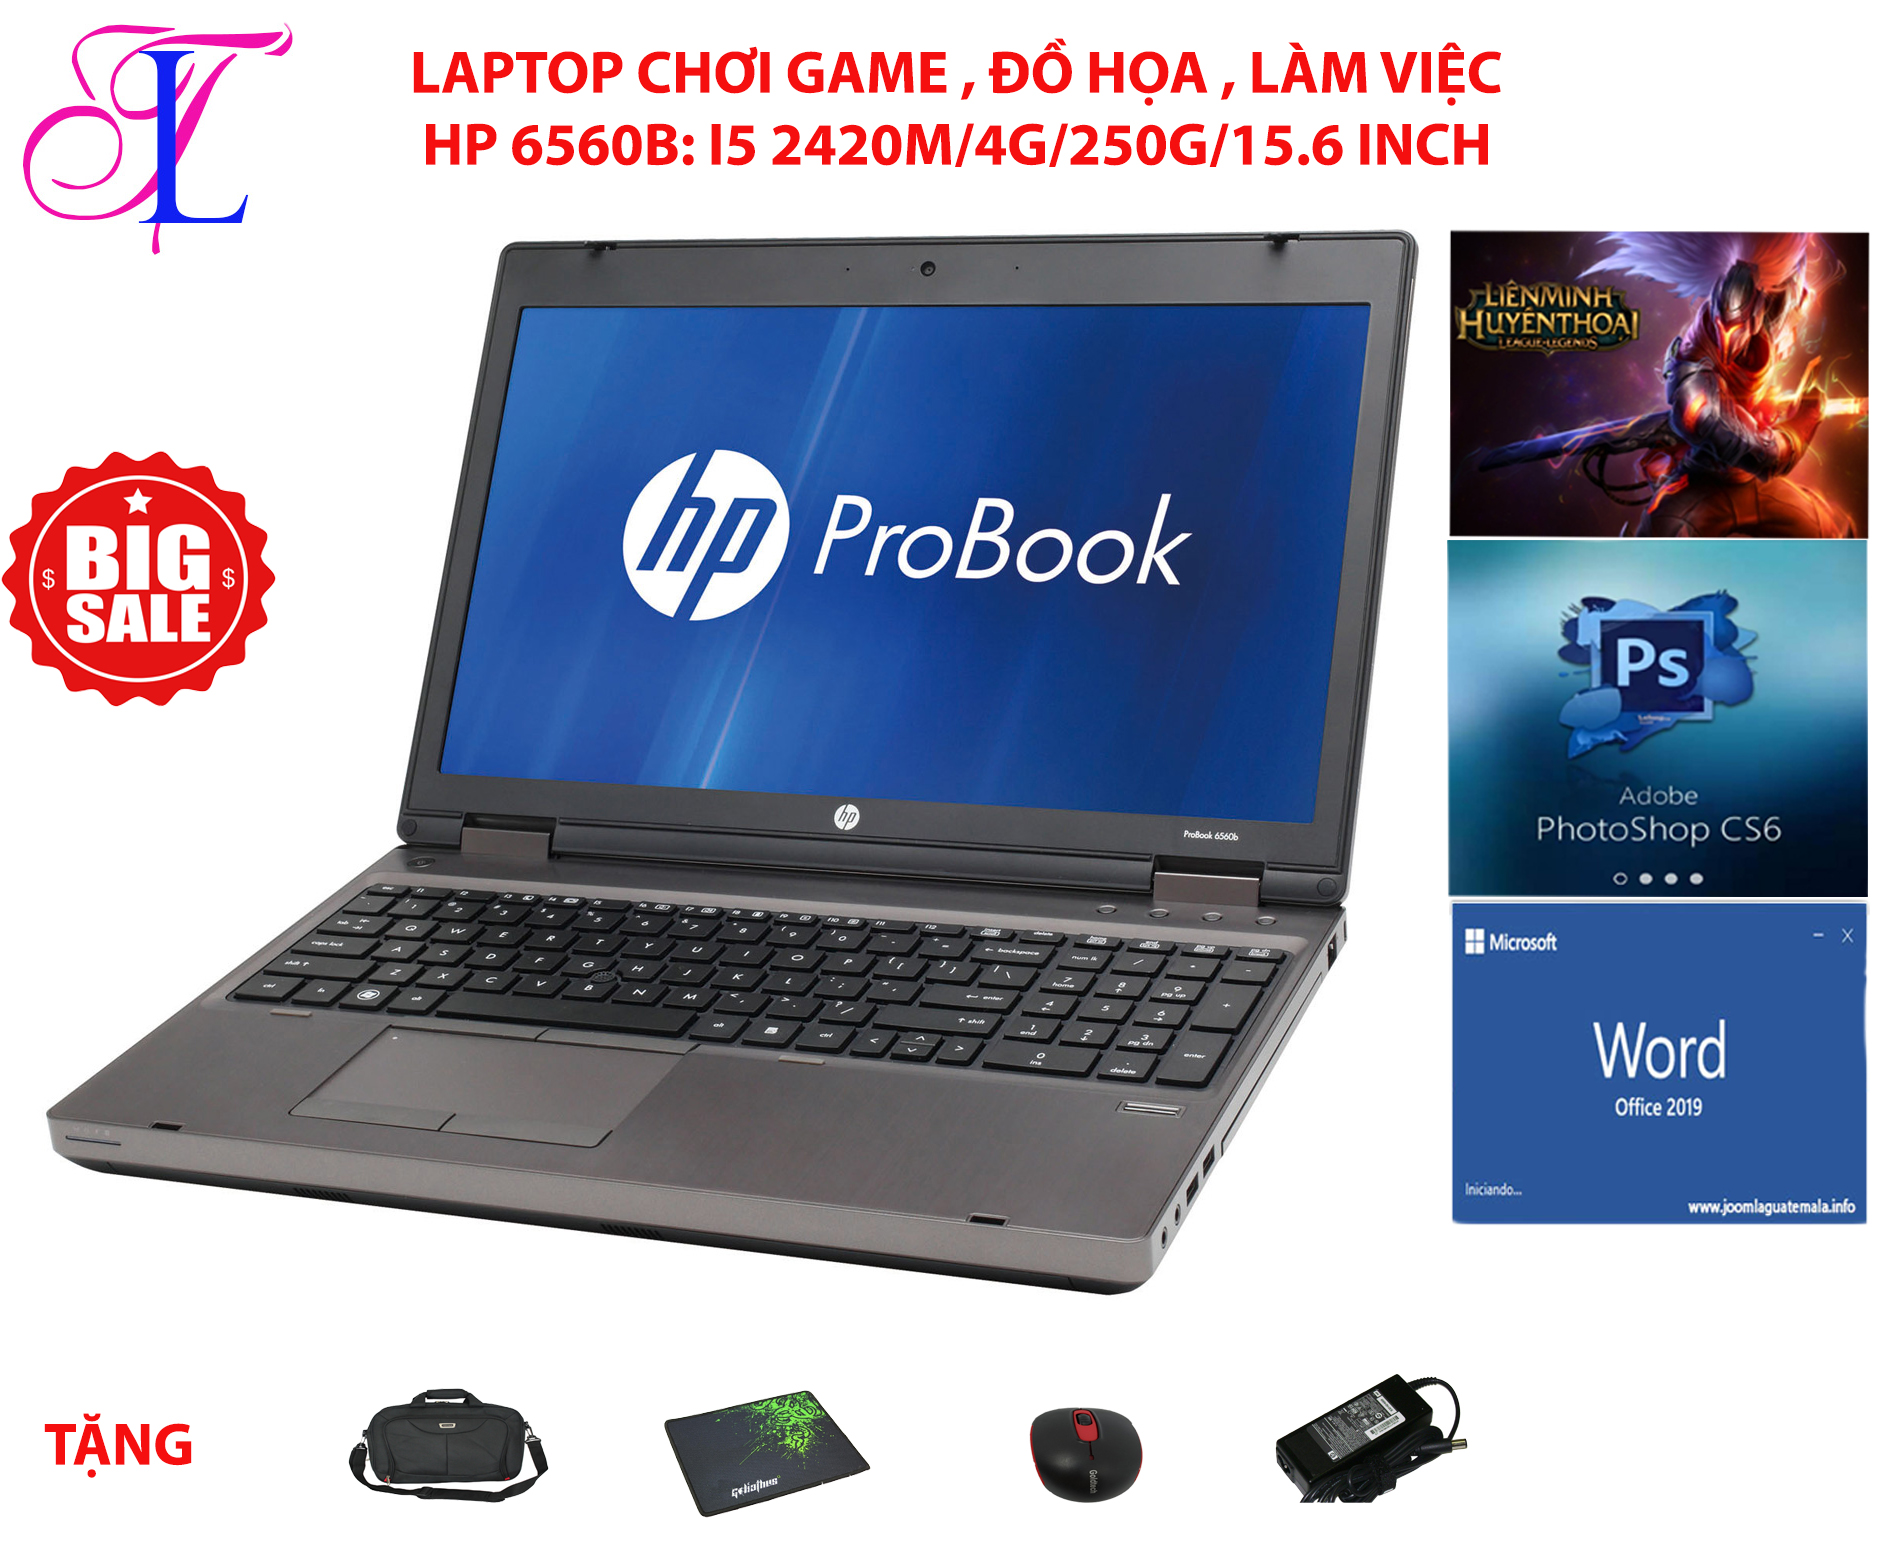 [Trả góp 0%]Laptop probook  6560b  core i5 2410m ram 4g ổ hdd 250g  hàng nhập khẩu màn 15,6